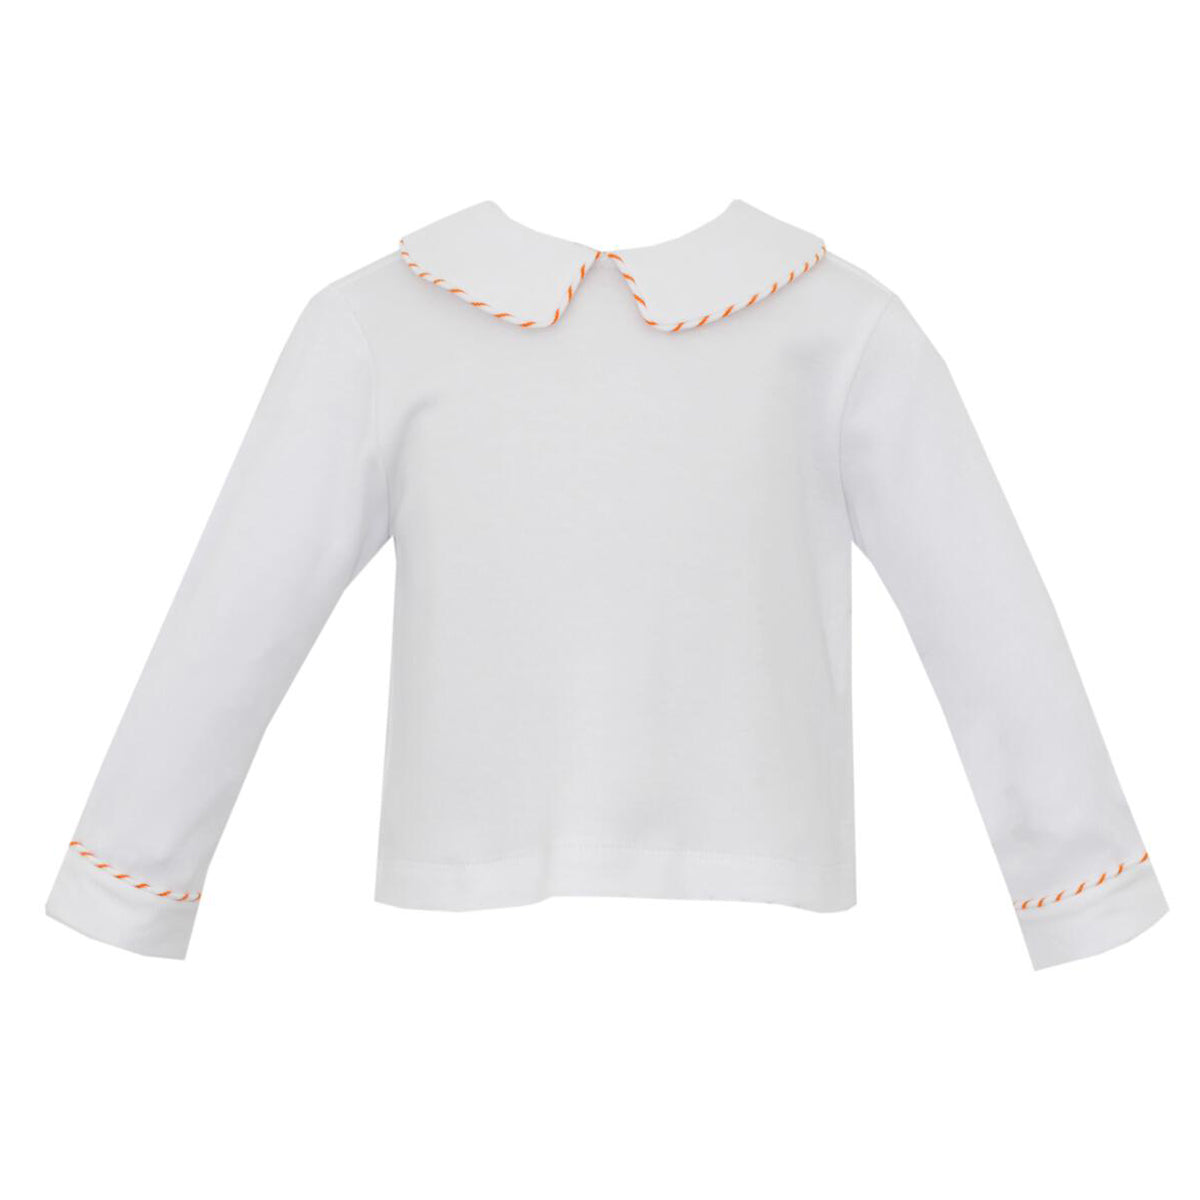 Orange & White Knit Stripe Pipping - Long Sleeve Shirt